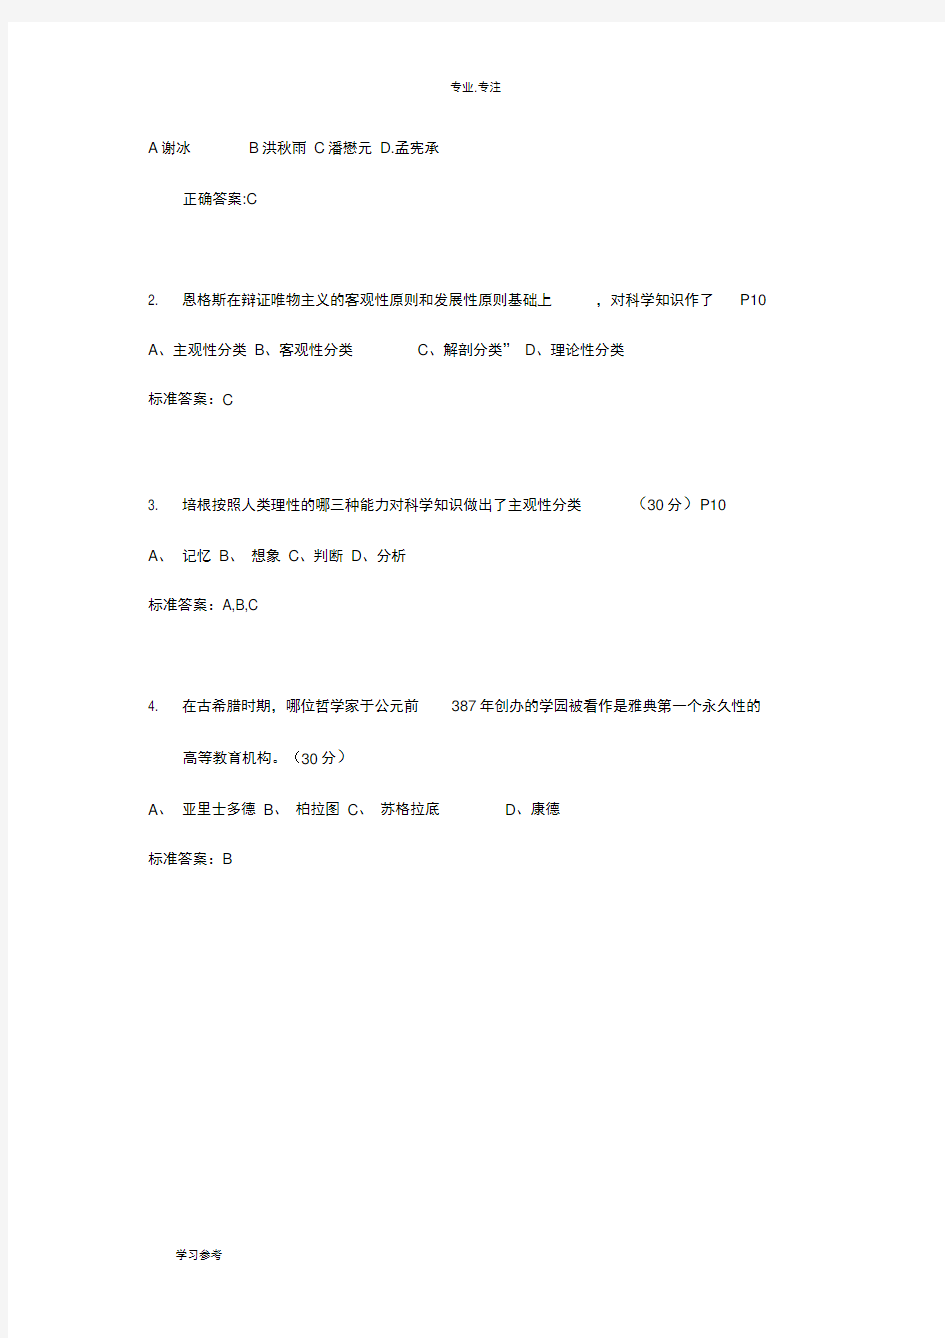 新版教材_2018江苏省高等教育学考点整理和试题库完整